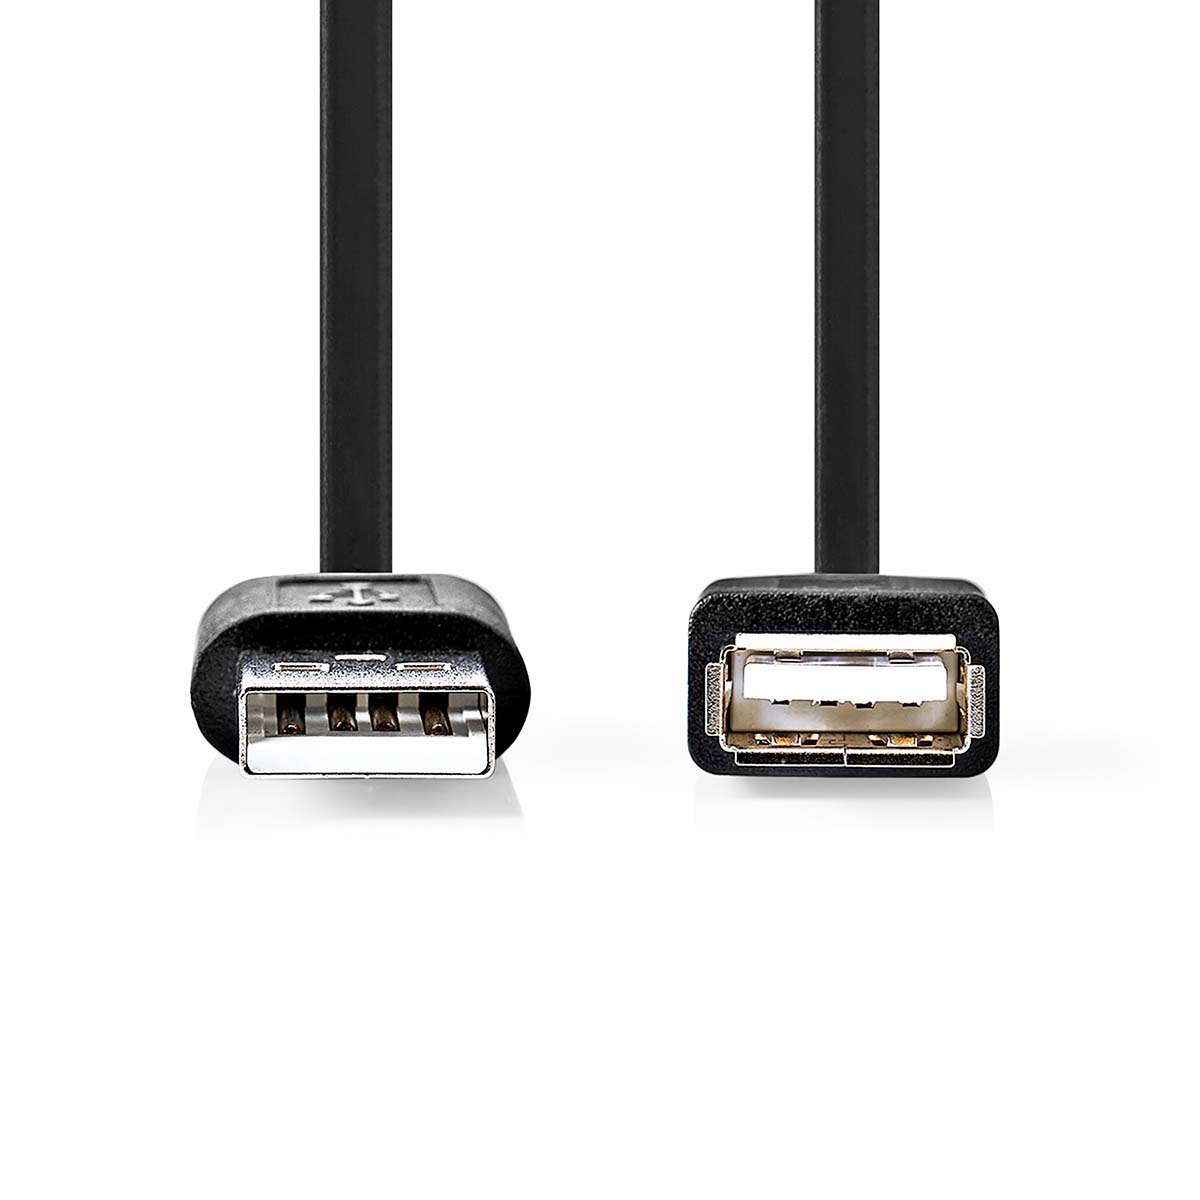 CCGP60010BK10 NEDIS USB-Kabel